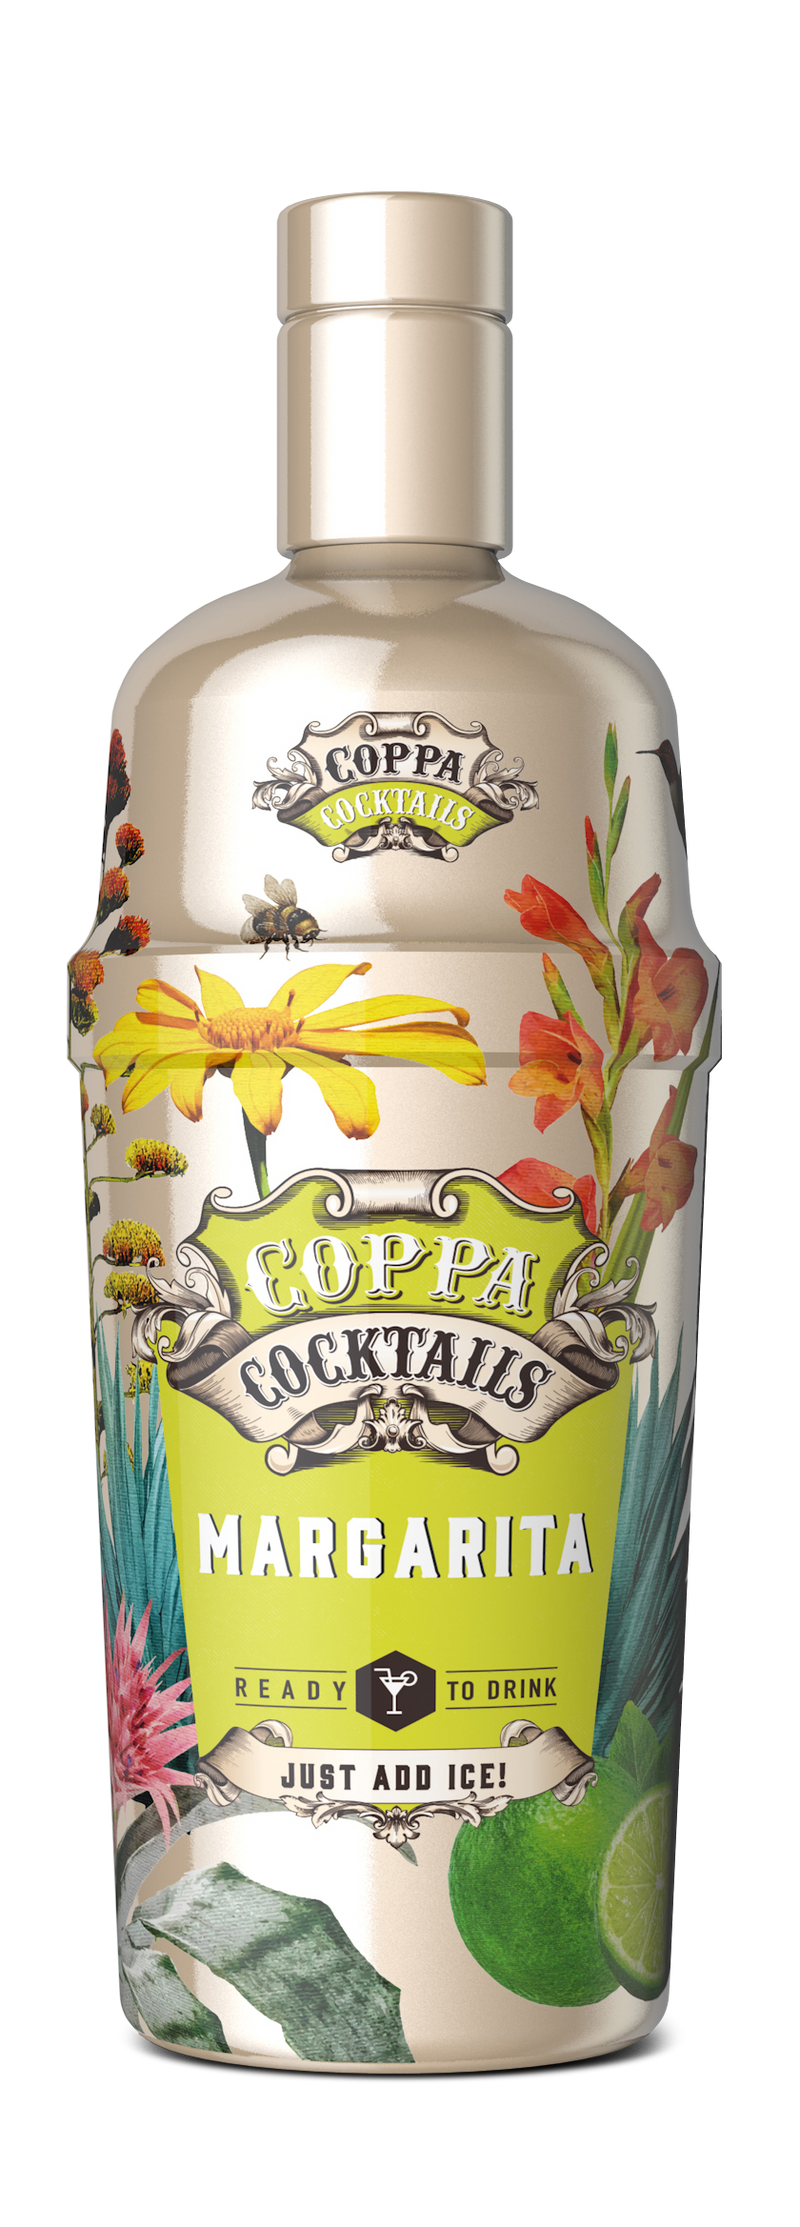 COPPA Margarita - 700ml